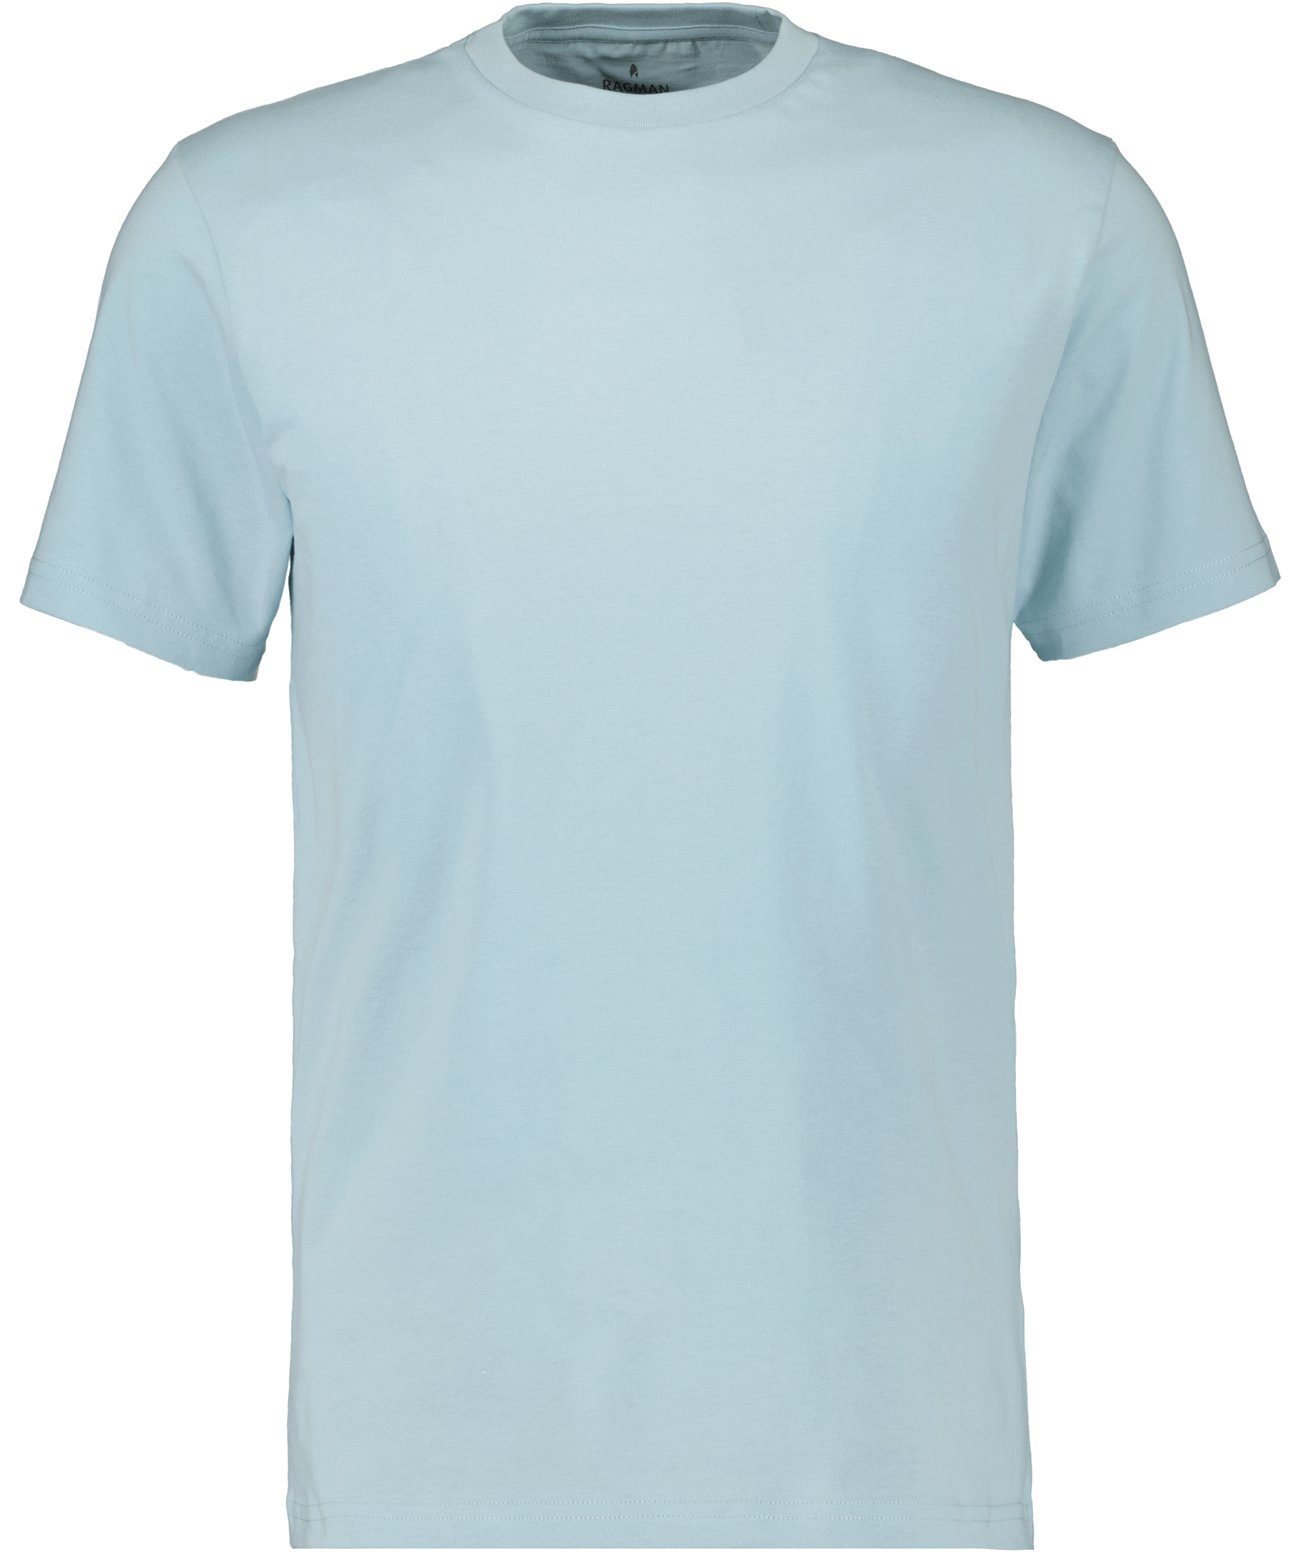 RAGMAN T-Shirt Hellblau-750